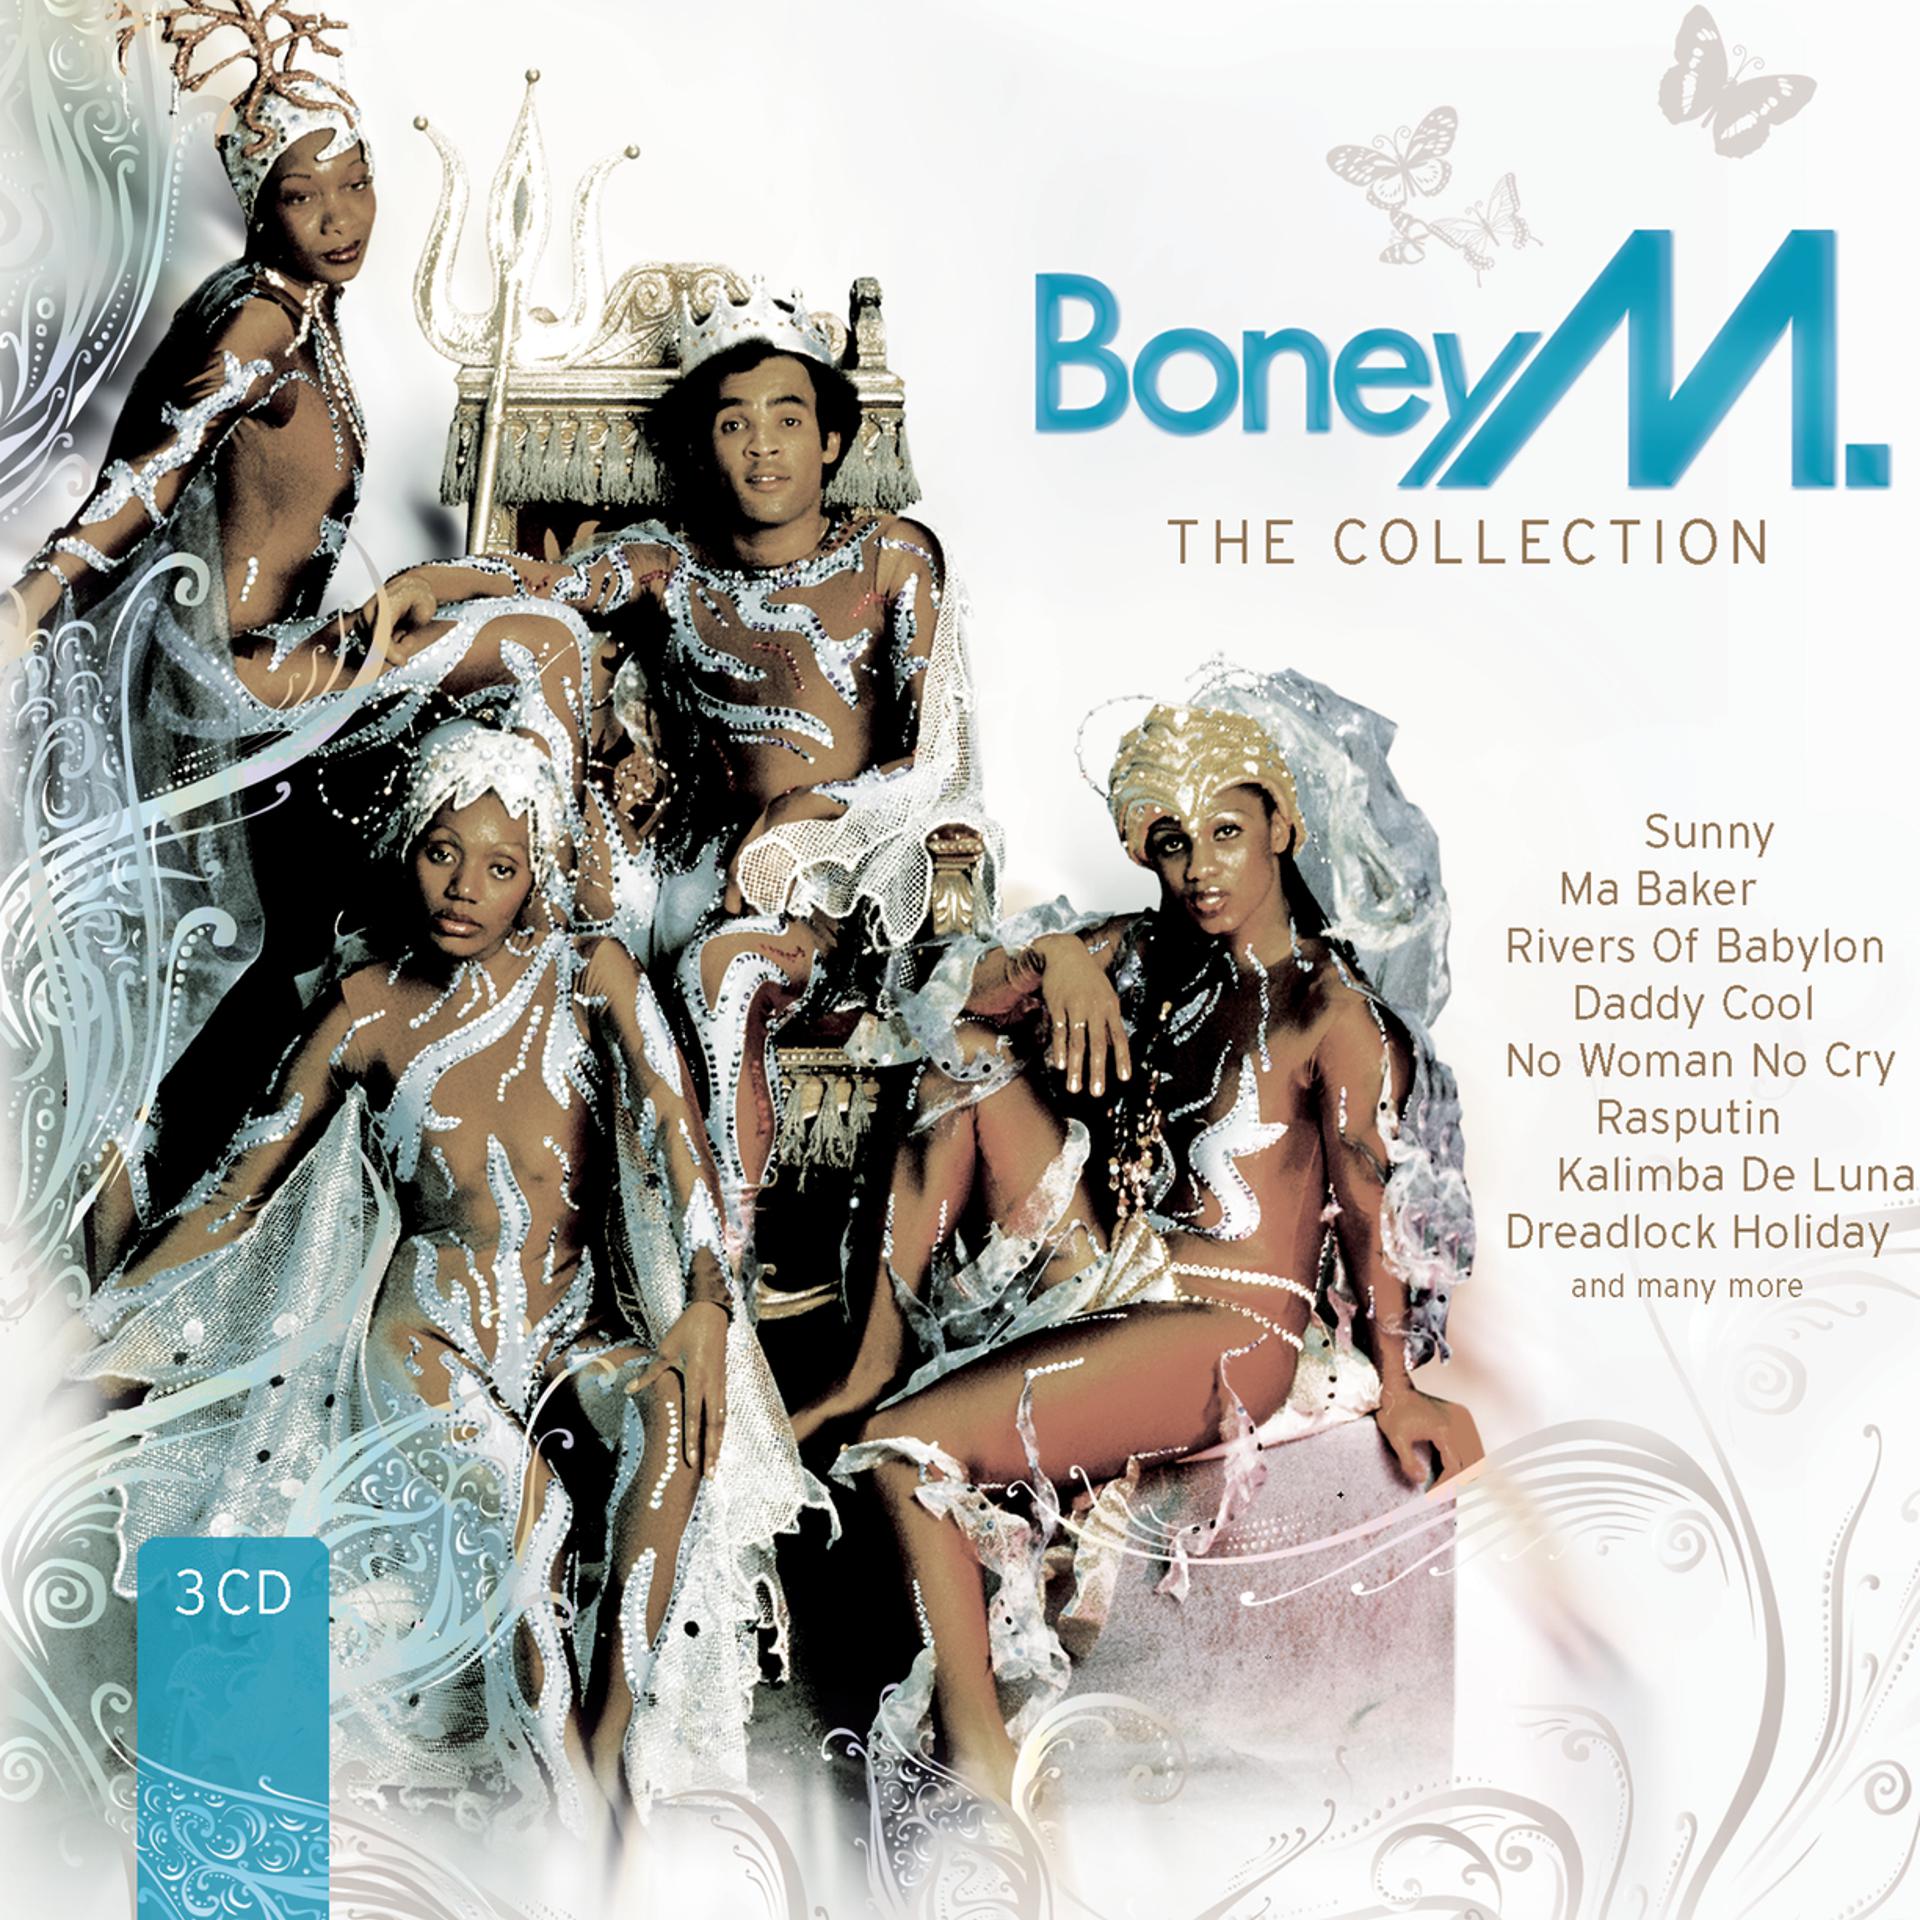 Бони м луна. Boney m mp3 collection CD обложка. Группа Boney m. в 80. Boney m Sunny обложка. Boney m - 2008 - the collection album.